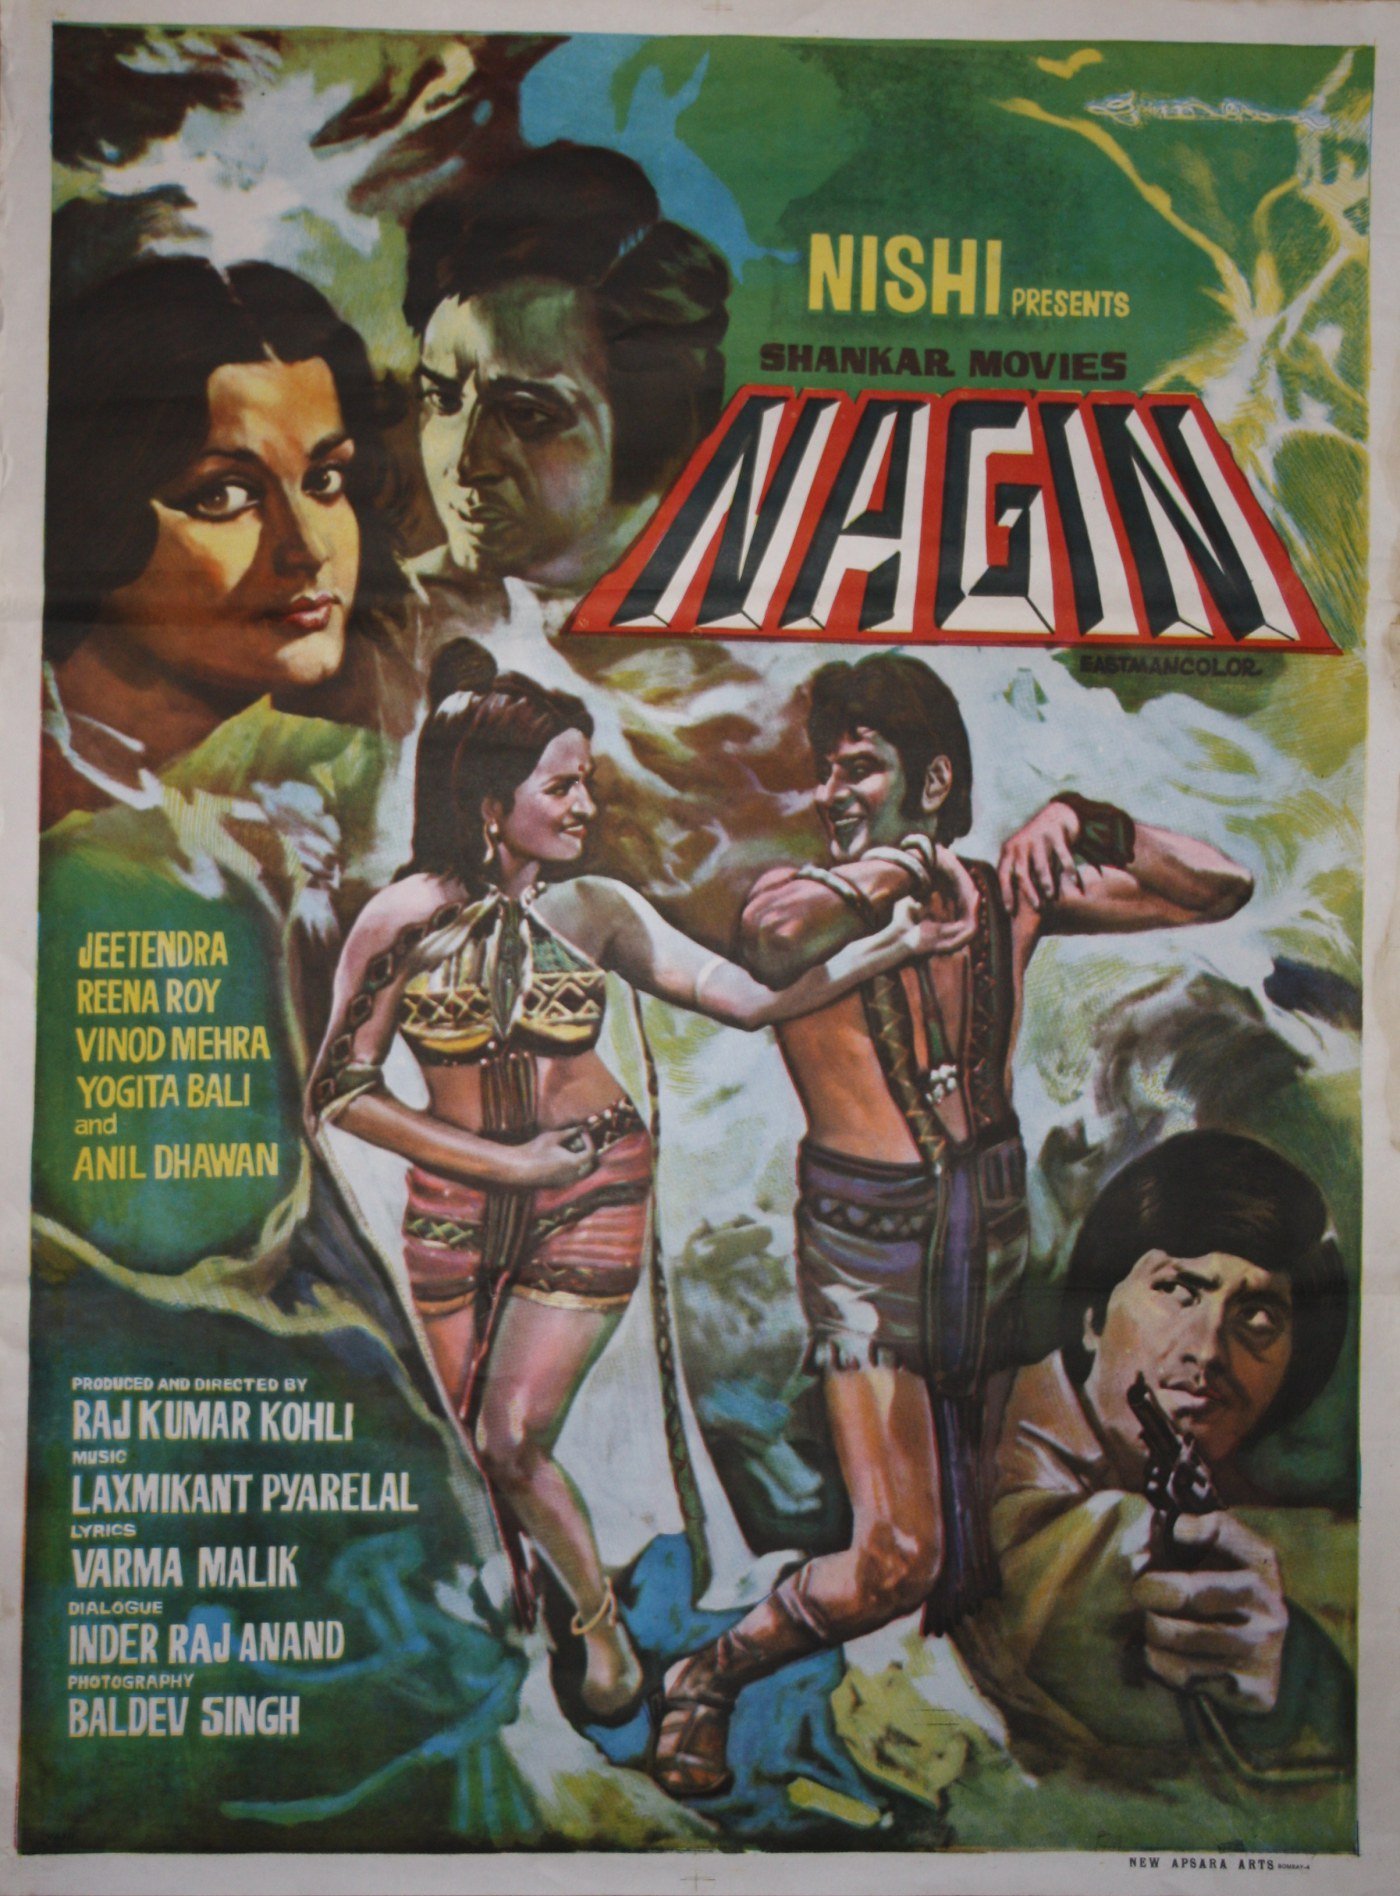 Nagin Movie Poster